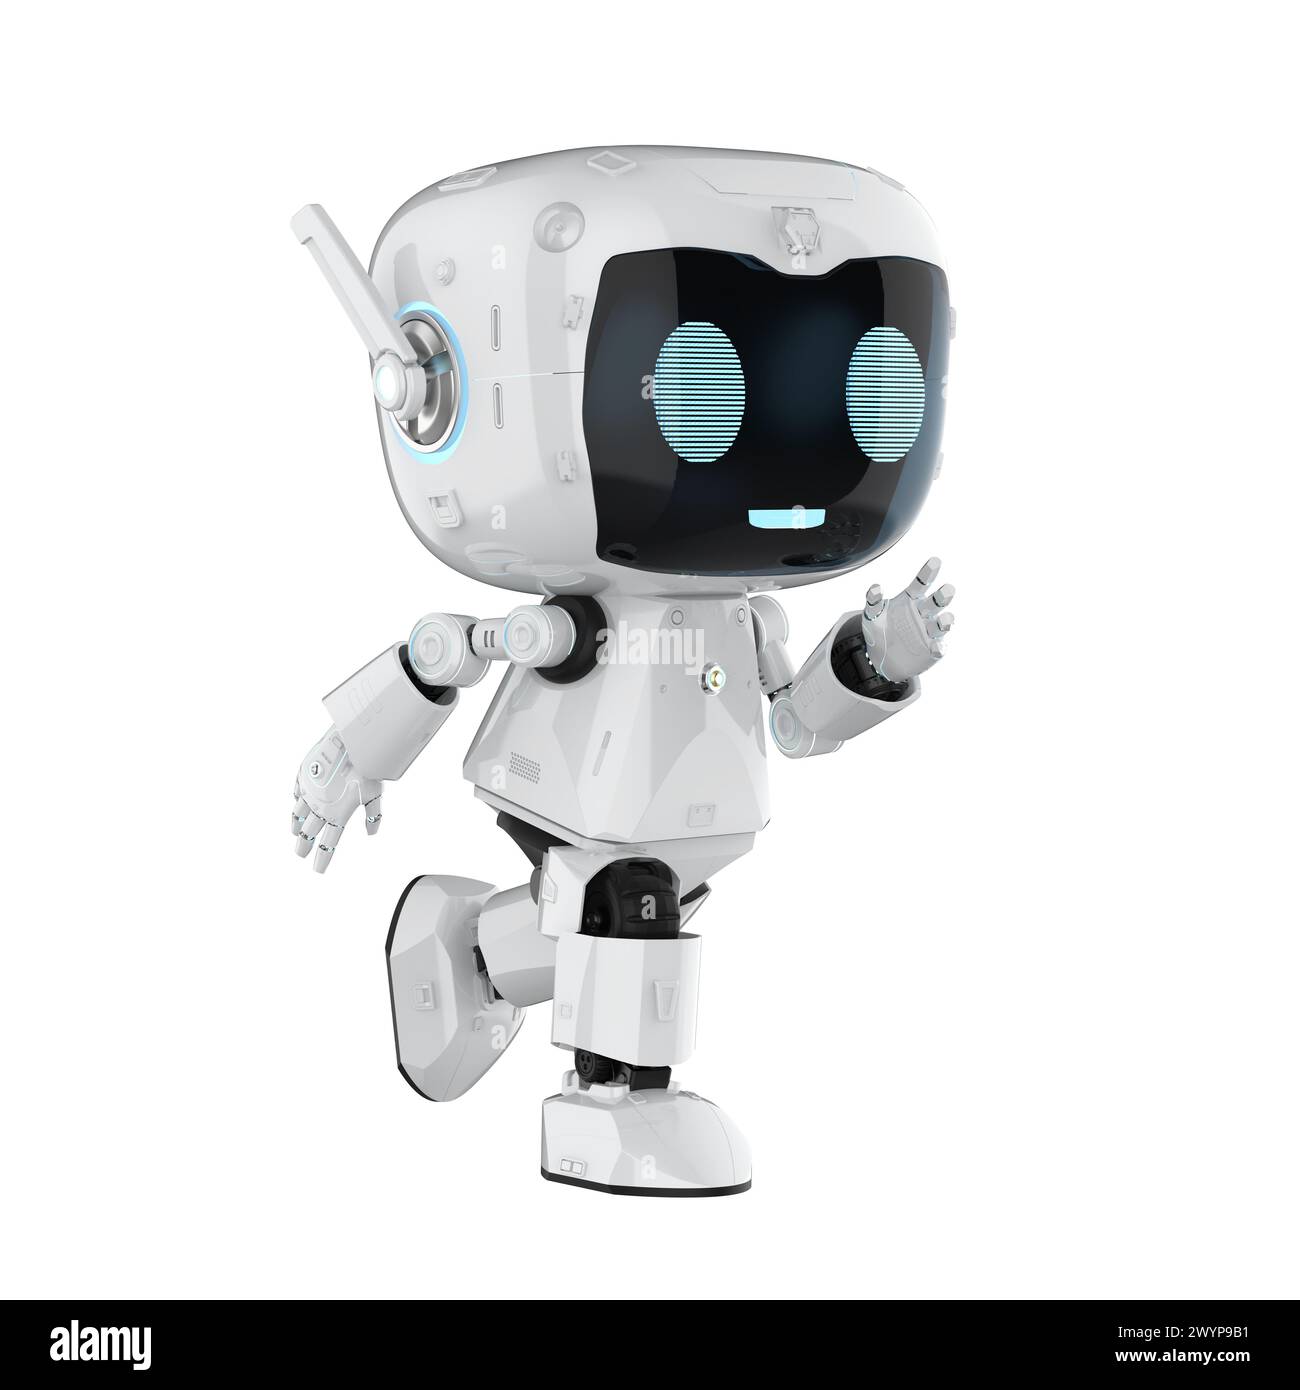 rendu 3d mignon et petit robot assistant personnel d'intelligence artificielle avec personnage de dessin animé marcher isolé sur blanc Banque D'Images